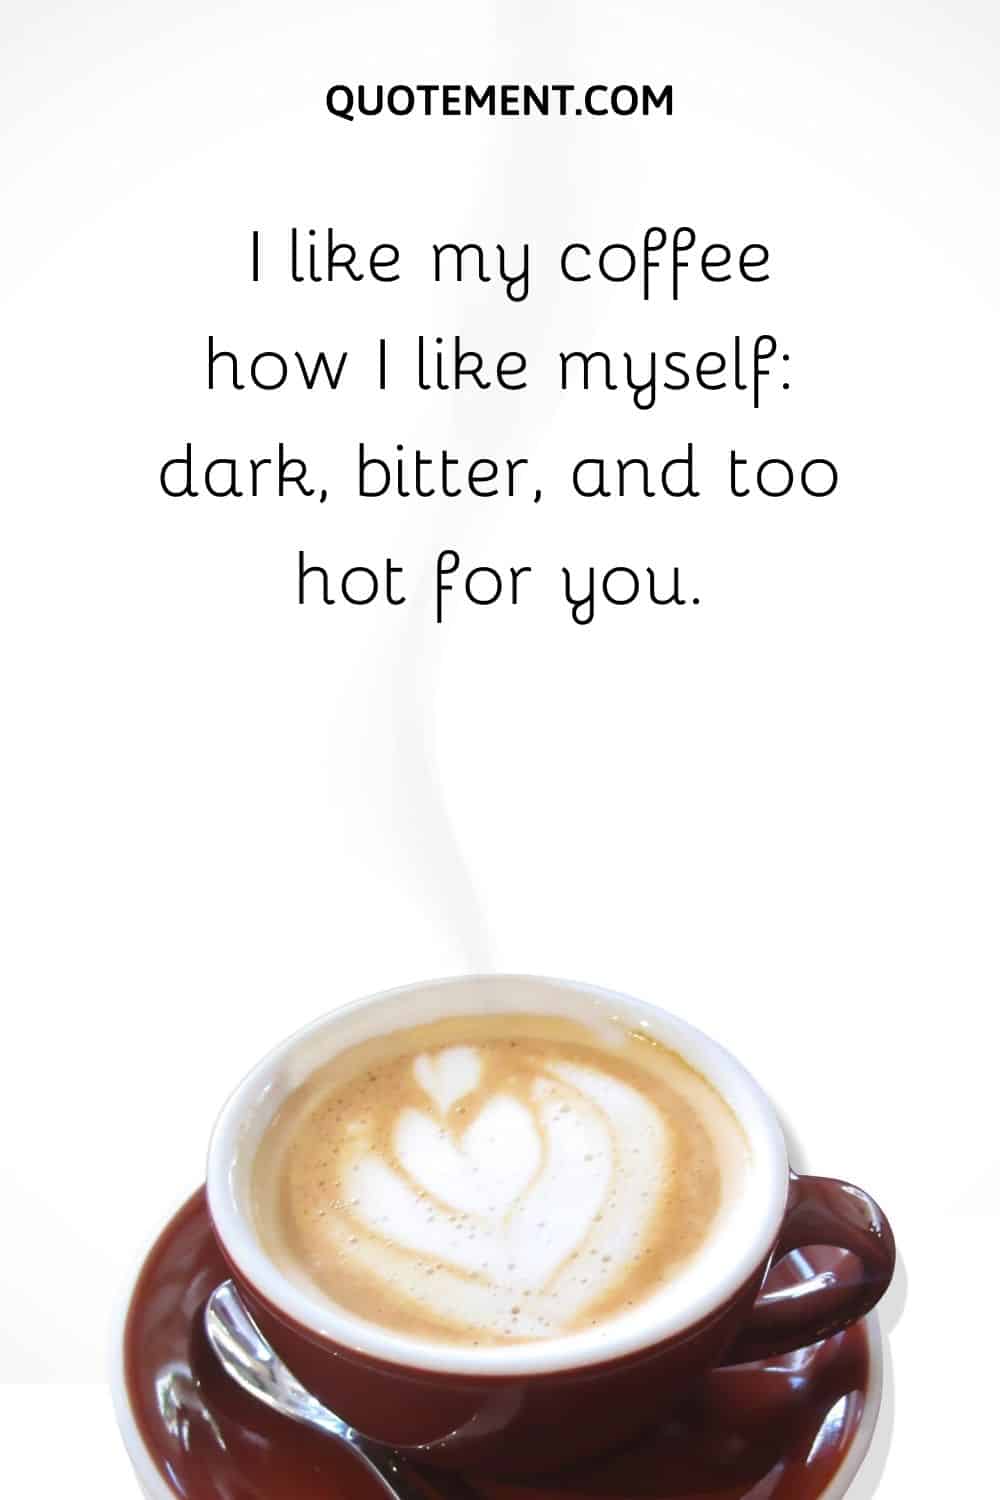 I like my coffee how I like myself dark, bitter, and too hot for you